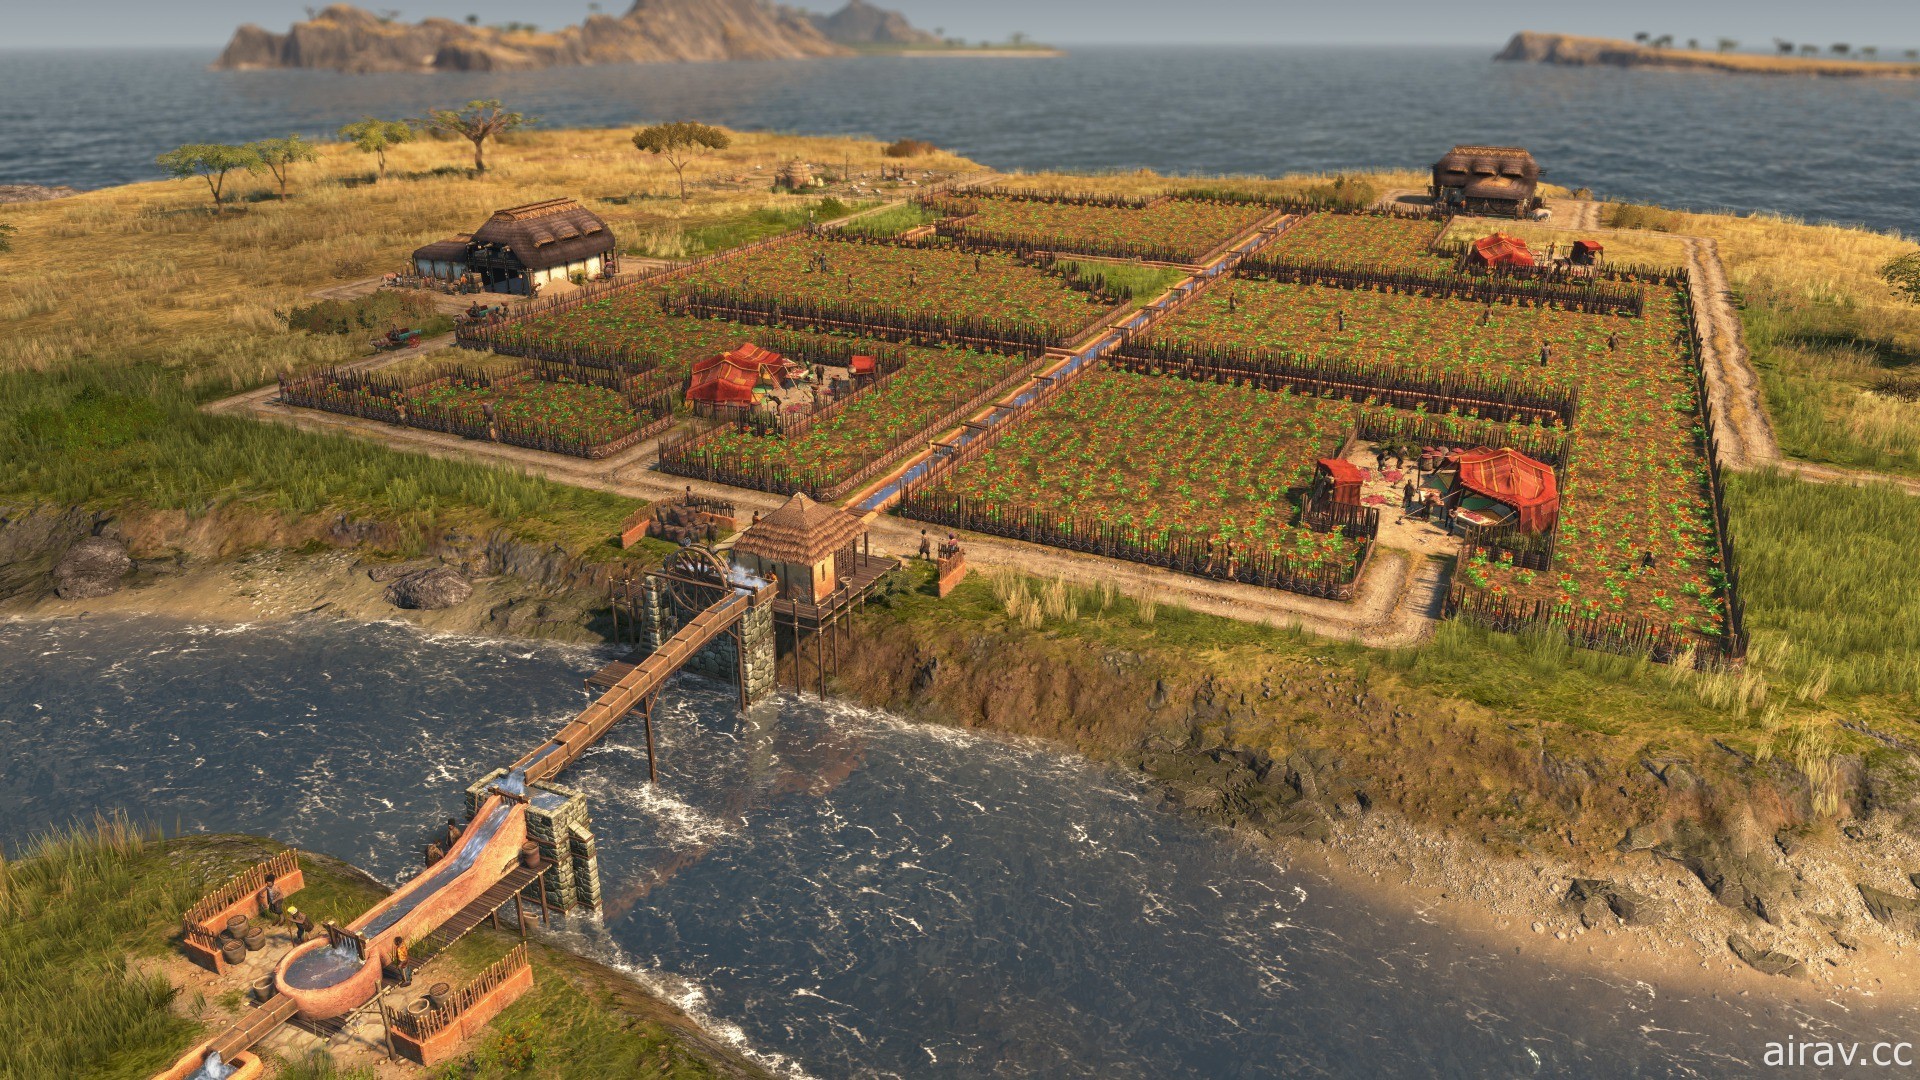 《美丽新世界 1800》新 DLC“狮子大地”已推出 前进新地区“安贝沙”体验灌溉系统等